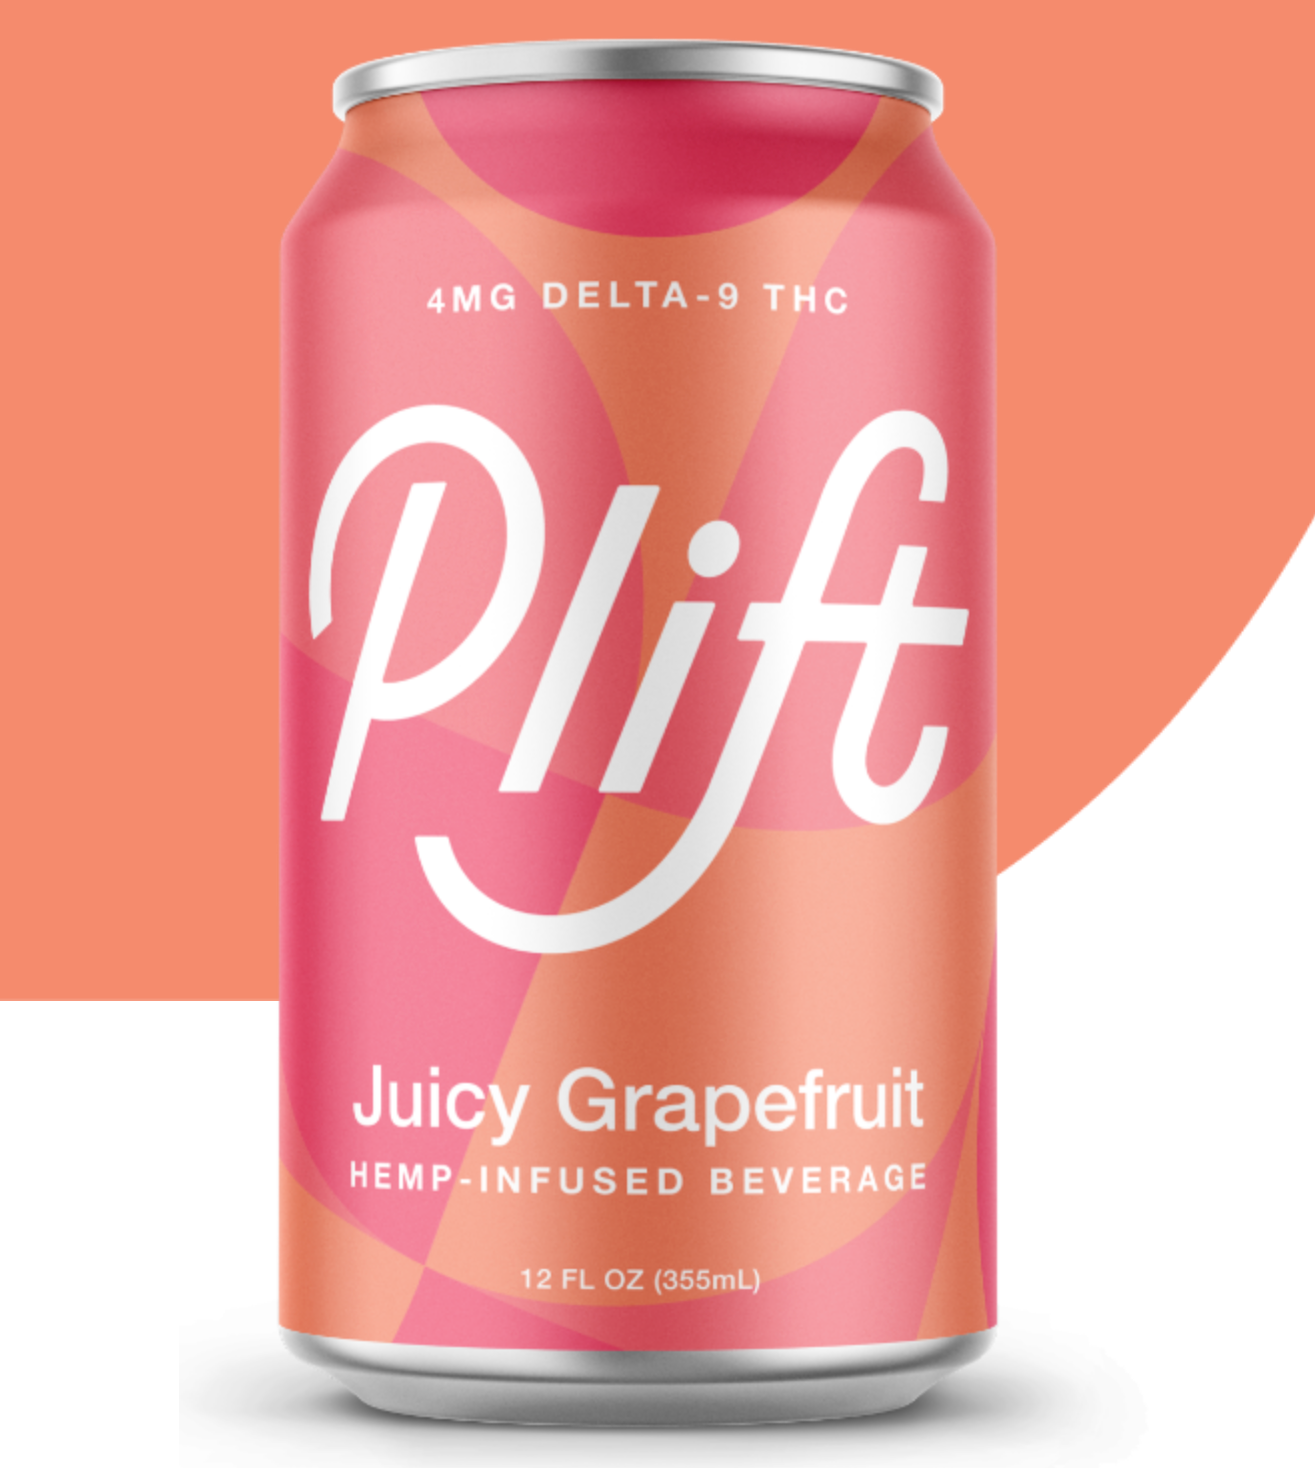 Plift - Juicy Grapefruit